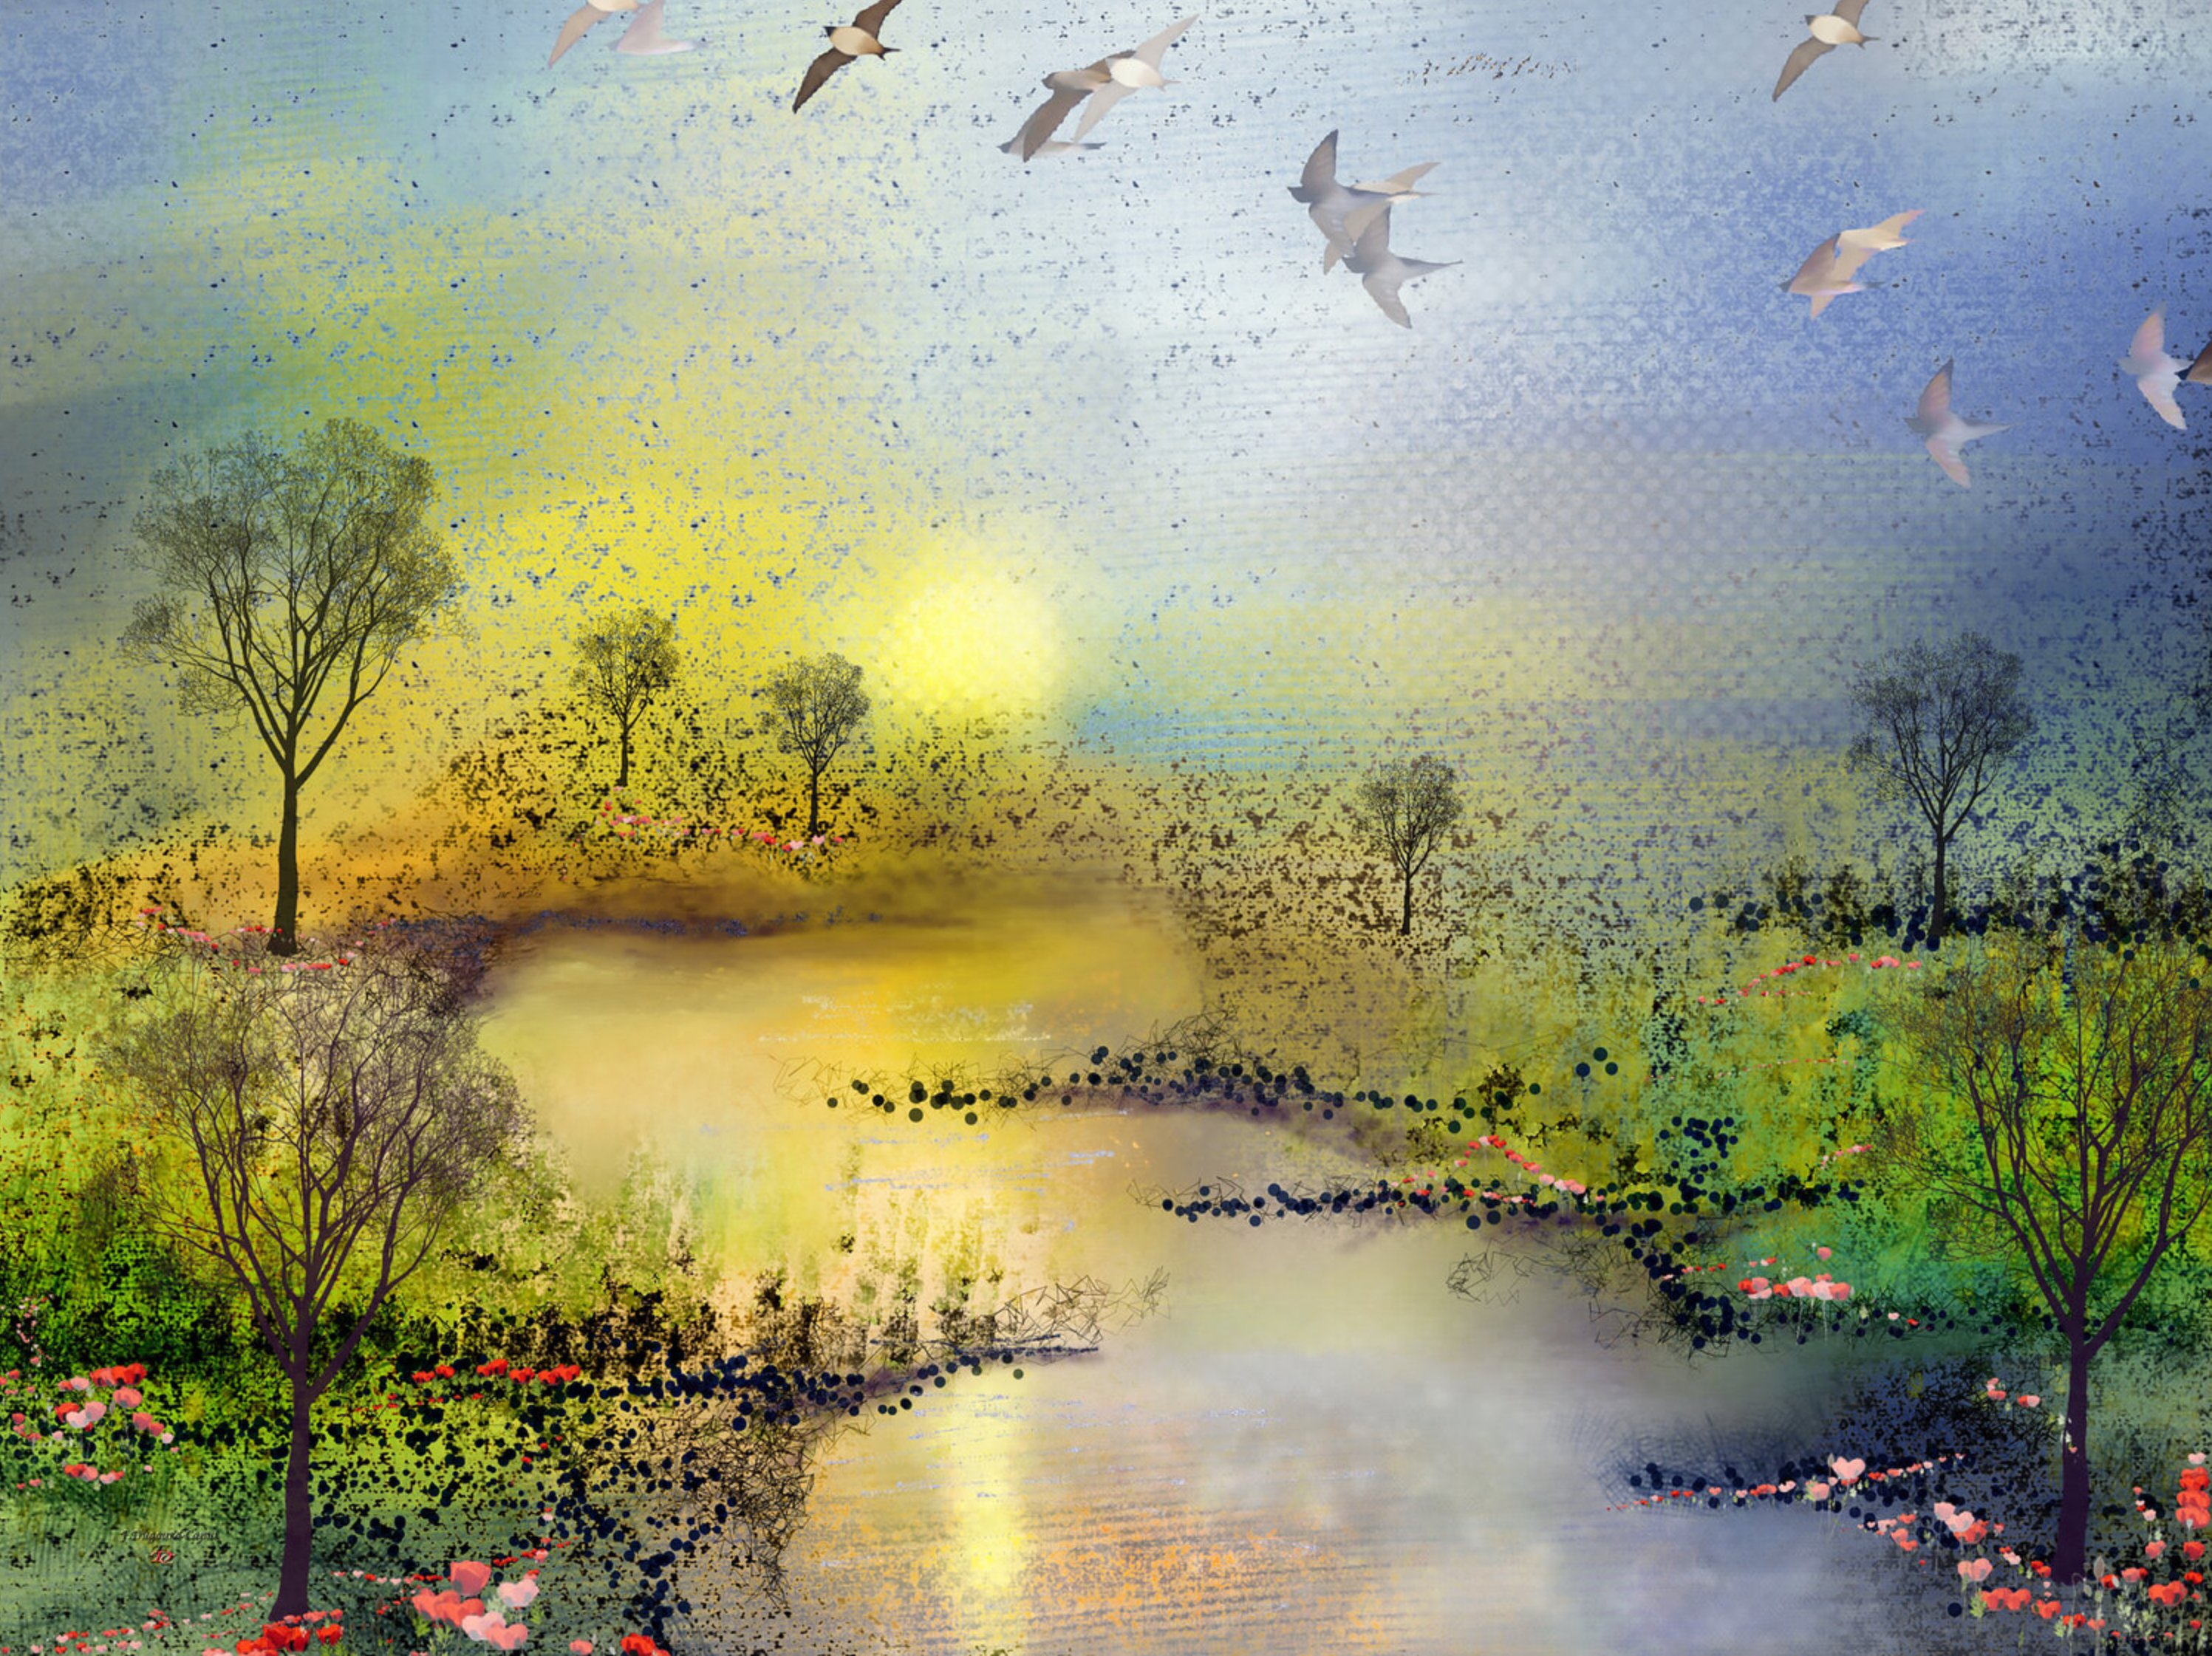 Françoise Dugourd-Caput's "Les coquelicots" abstraktes Gemälde zeigt imaginäre Frühlingslandschaft voller Süße, die einen Fluss zeigt, der sich bei Sonnenuntergang zwischen zwei grünen Wiesen schlängelt, die von Mohnblumen gesäumt sind